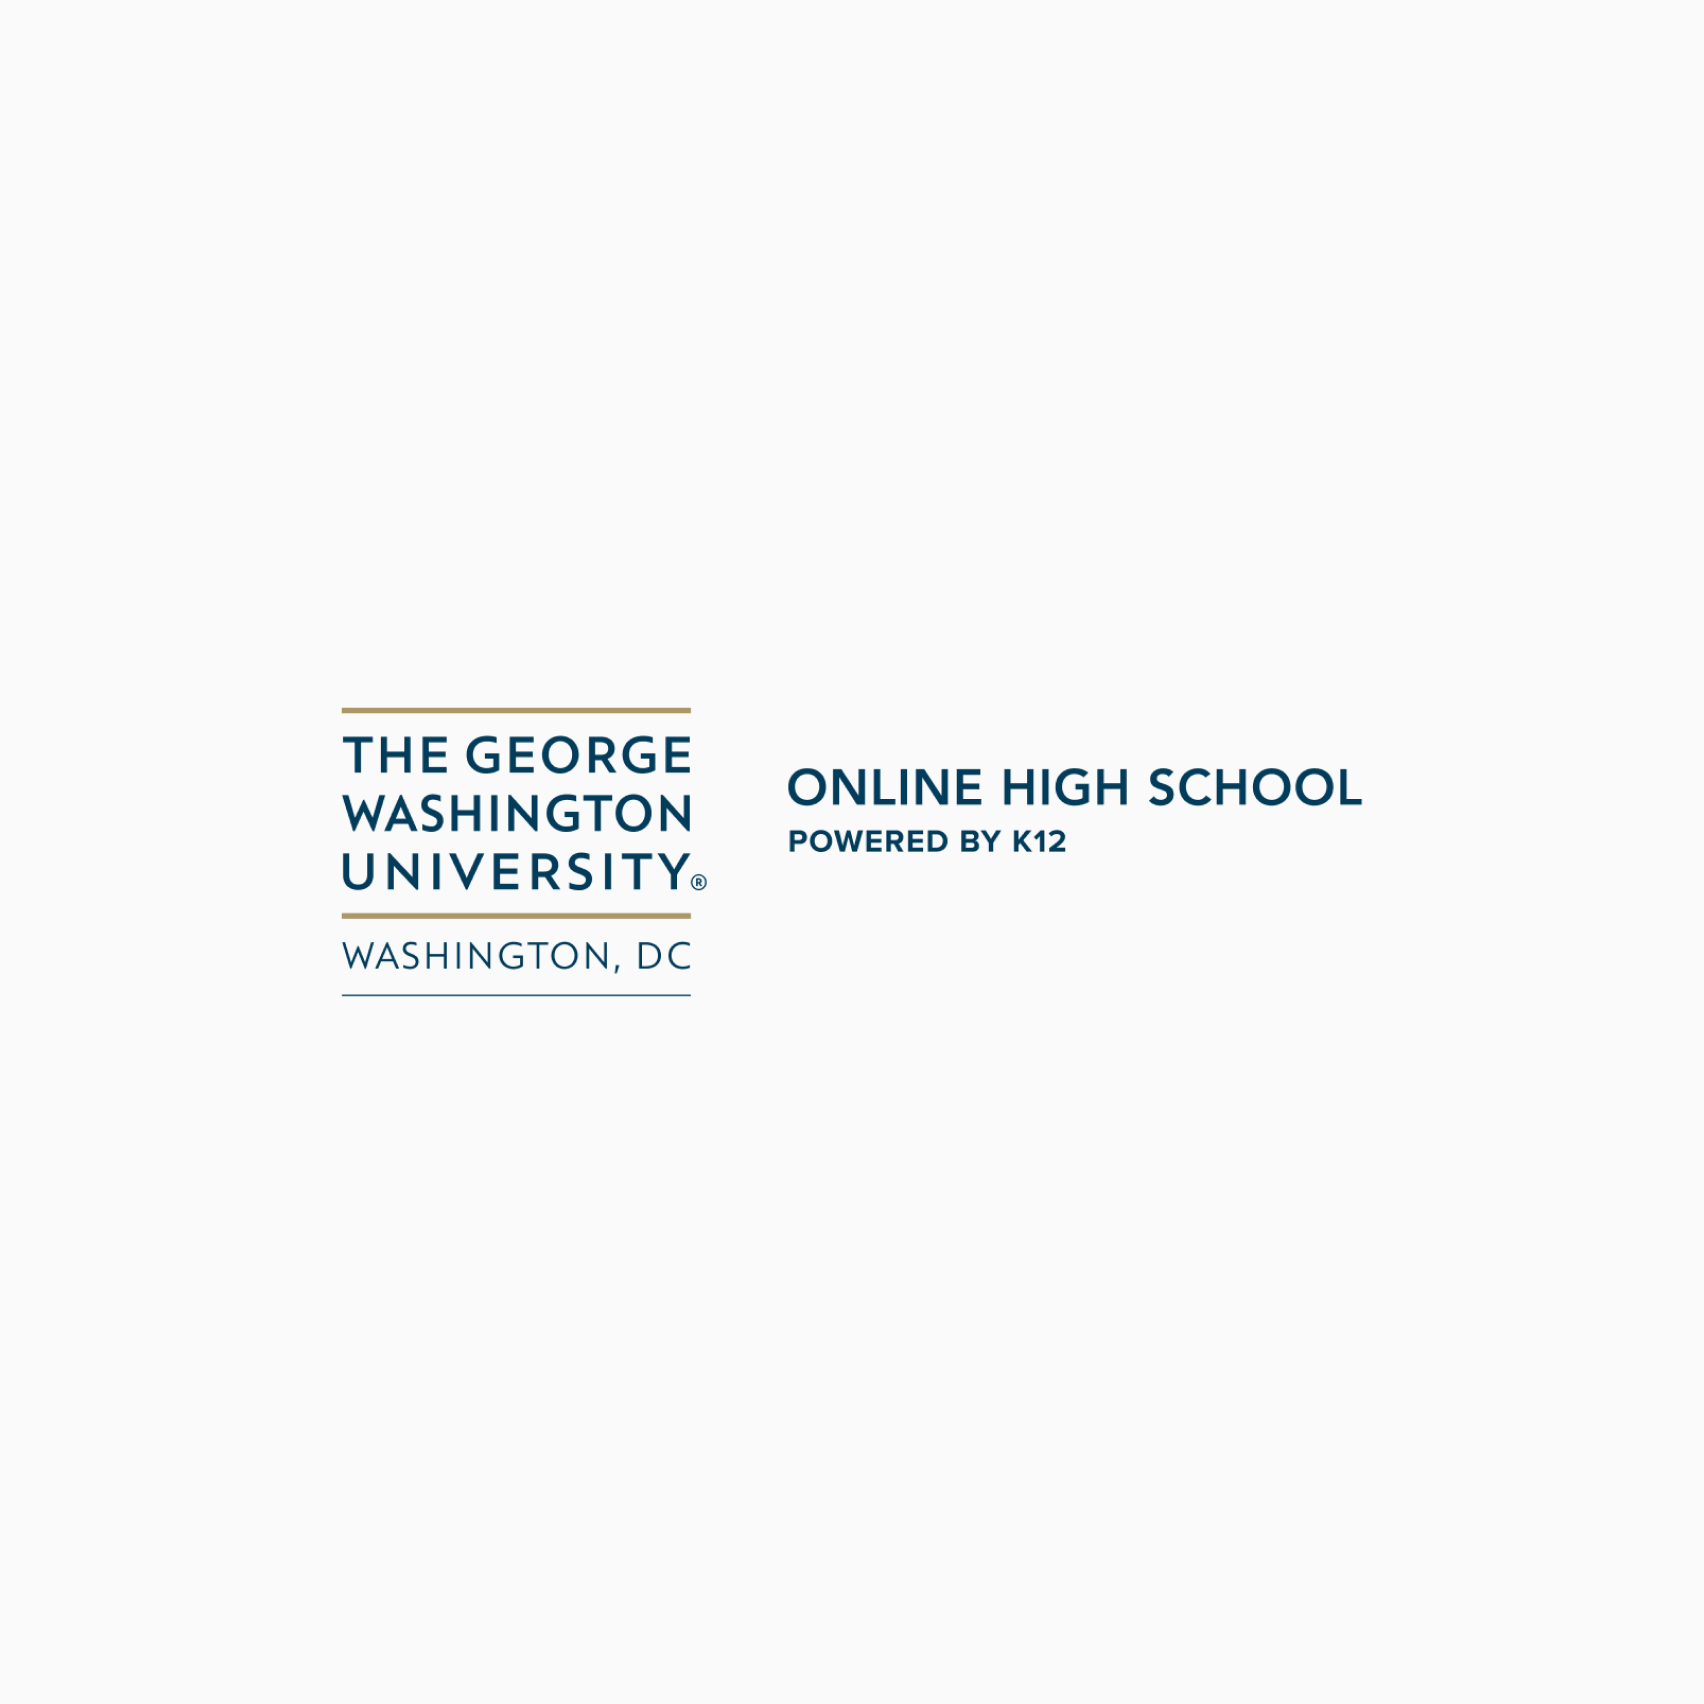 Escuelas privadas en línea imagen 11 (nombre George Washington)